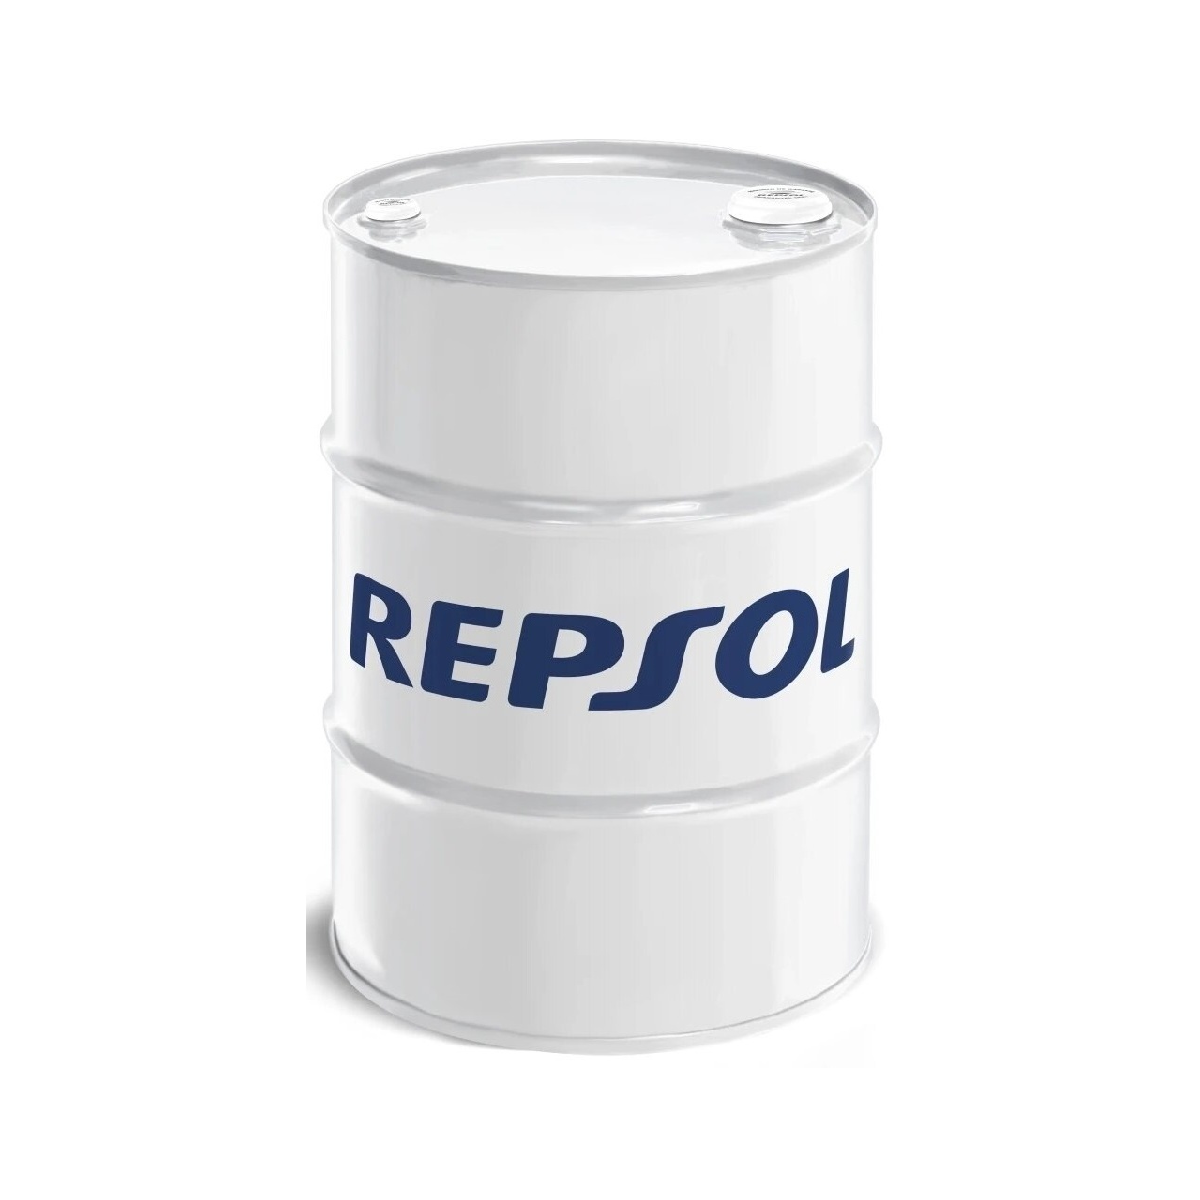 Motorno ulje – ulje za motore Repsol Elite 50501 5W-40 60L